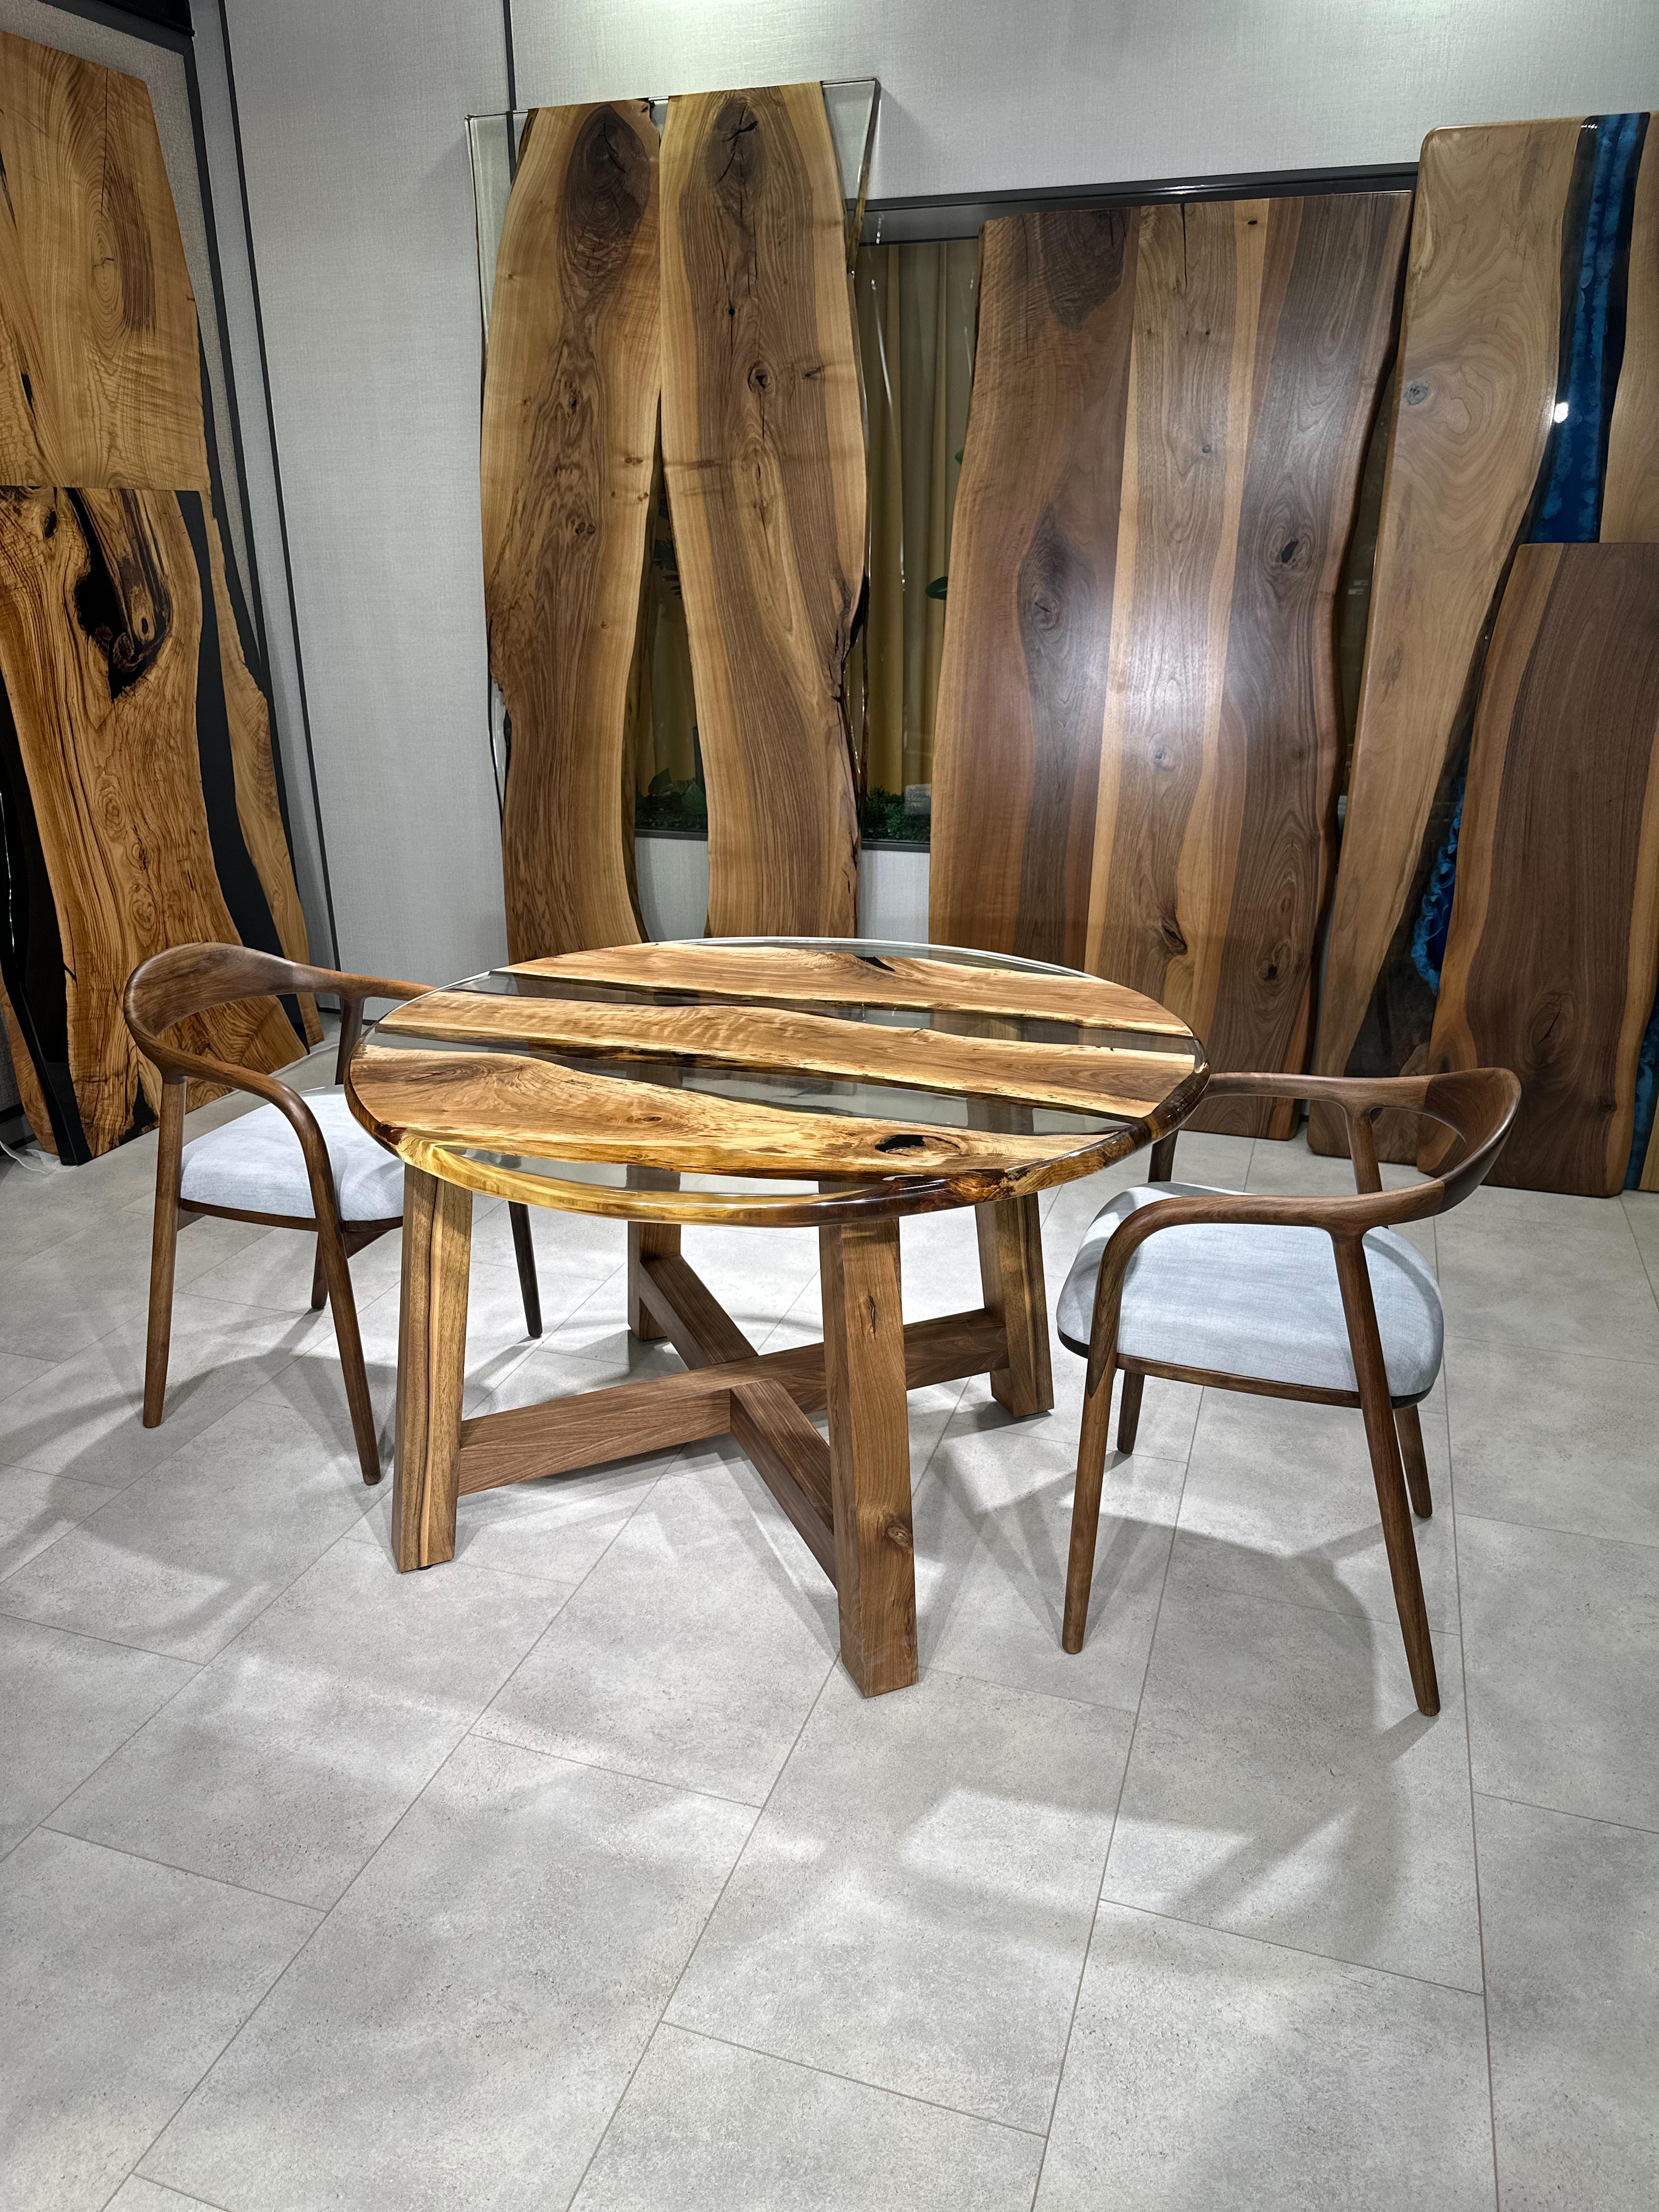 Table de salle à manger ronde en résine époxy transparente sur mesure en noyer 

Cette table est fabriquée en bois de noyer vieux de 500 ans. Les veines et la texture du bois décrivent l'aspect d'un bois de noyer naturel.
Elle peut être utilisée